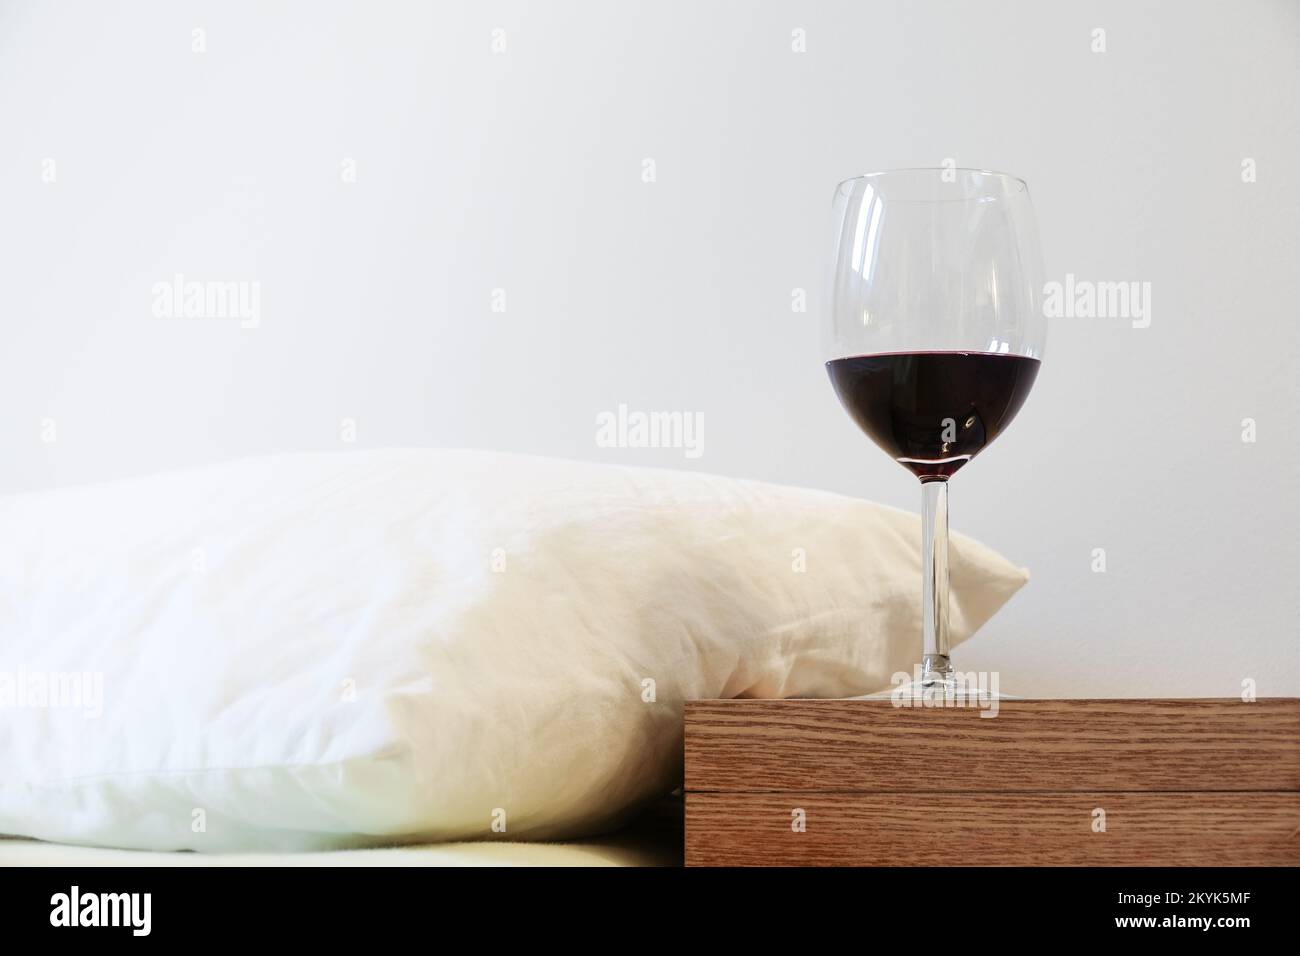 Cuscino e bicchiere di vino sul comodino. Concetto di abuso di alcool e problemi di sonno Foto Stock